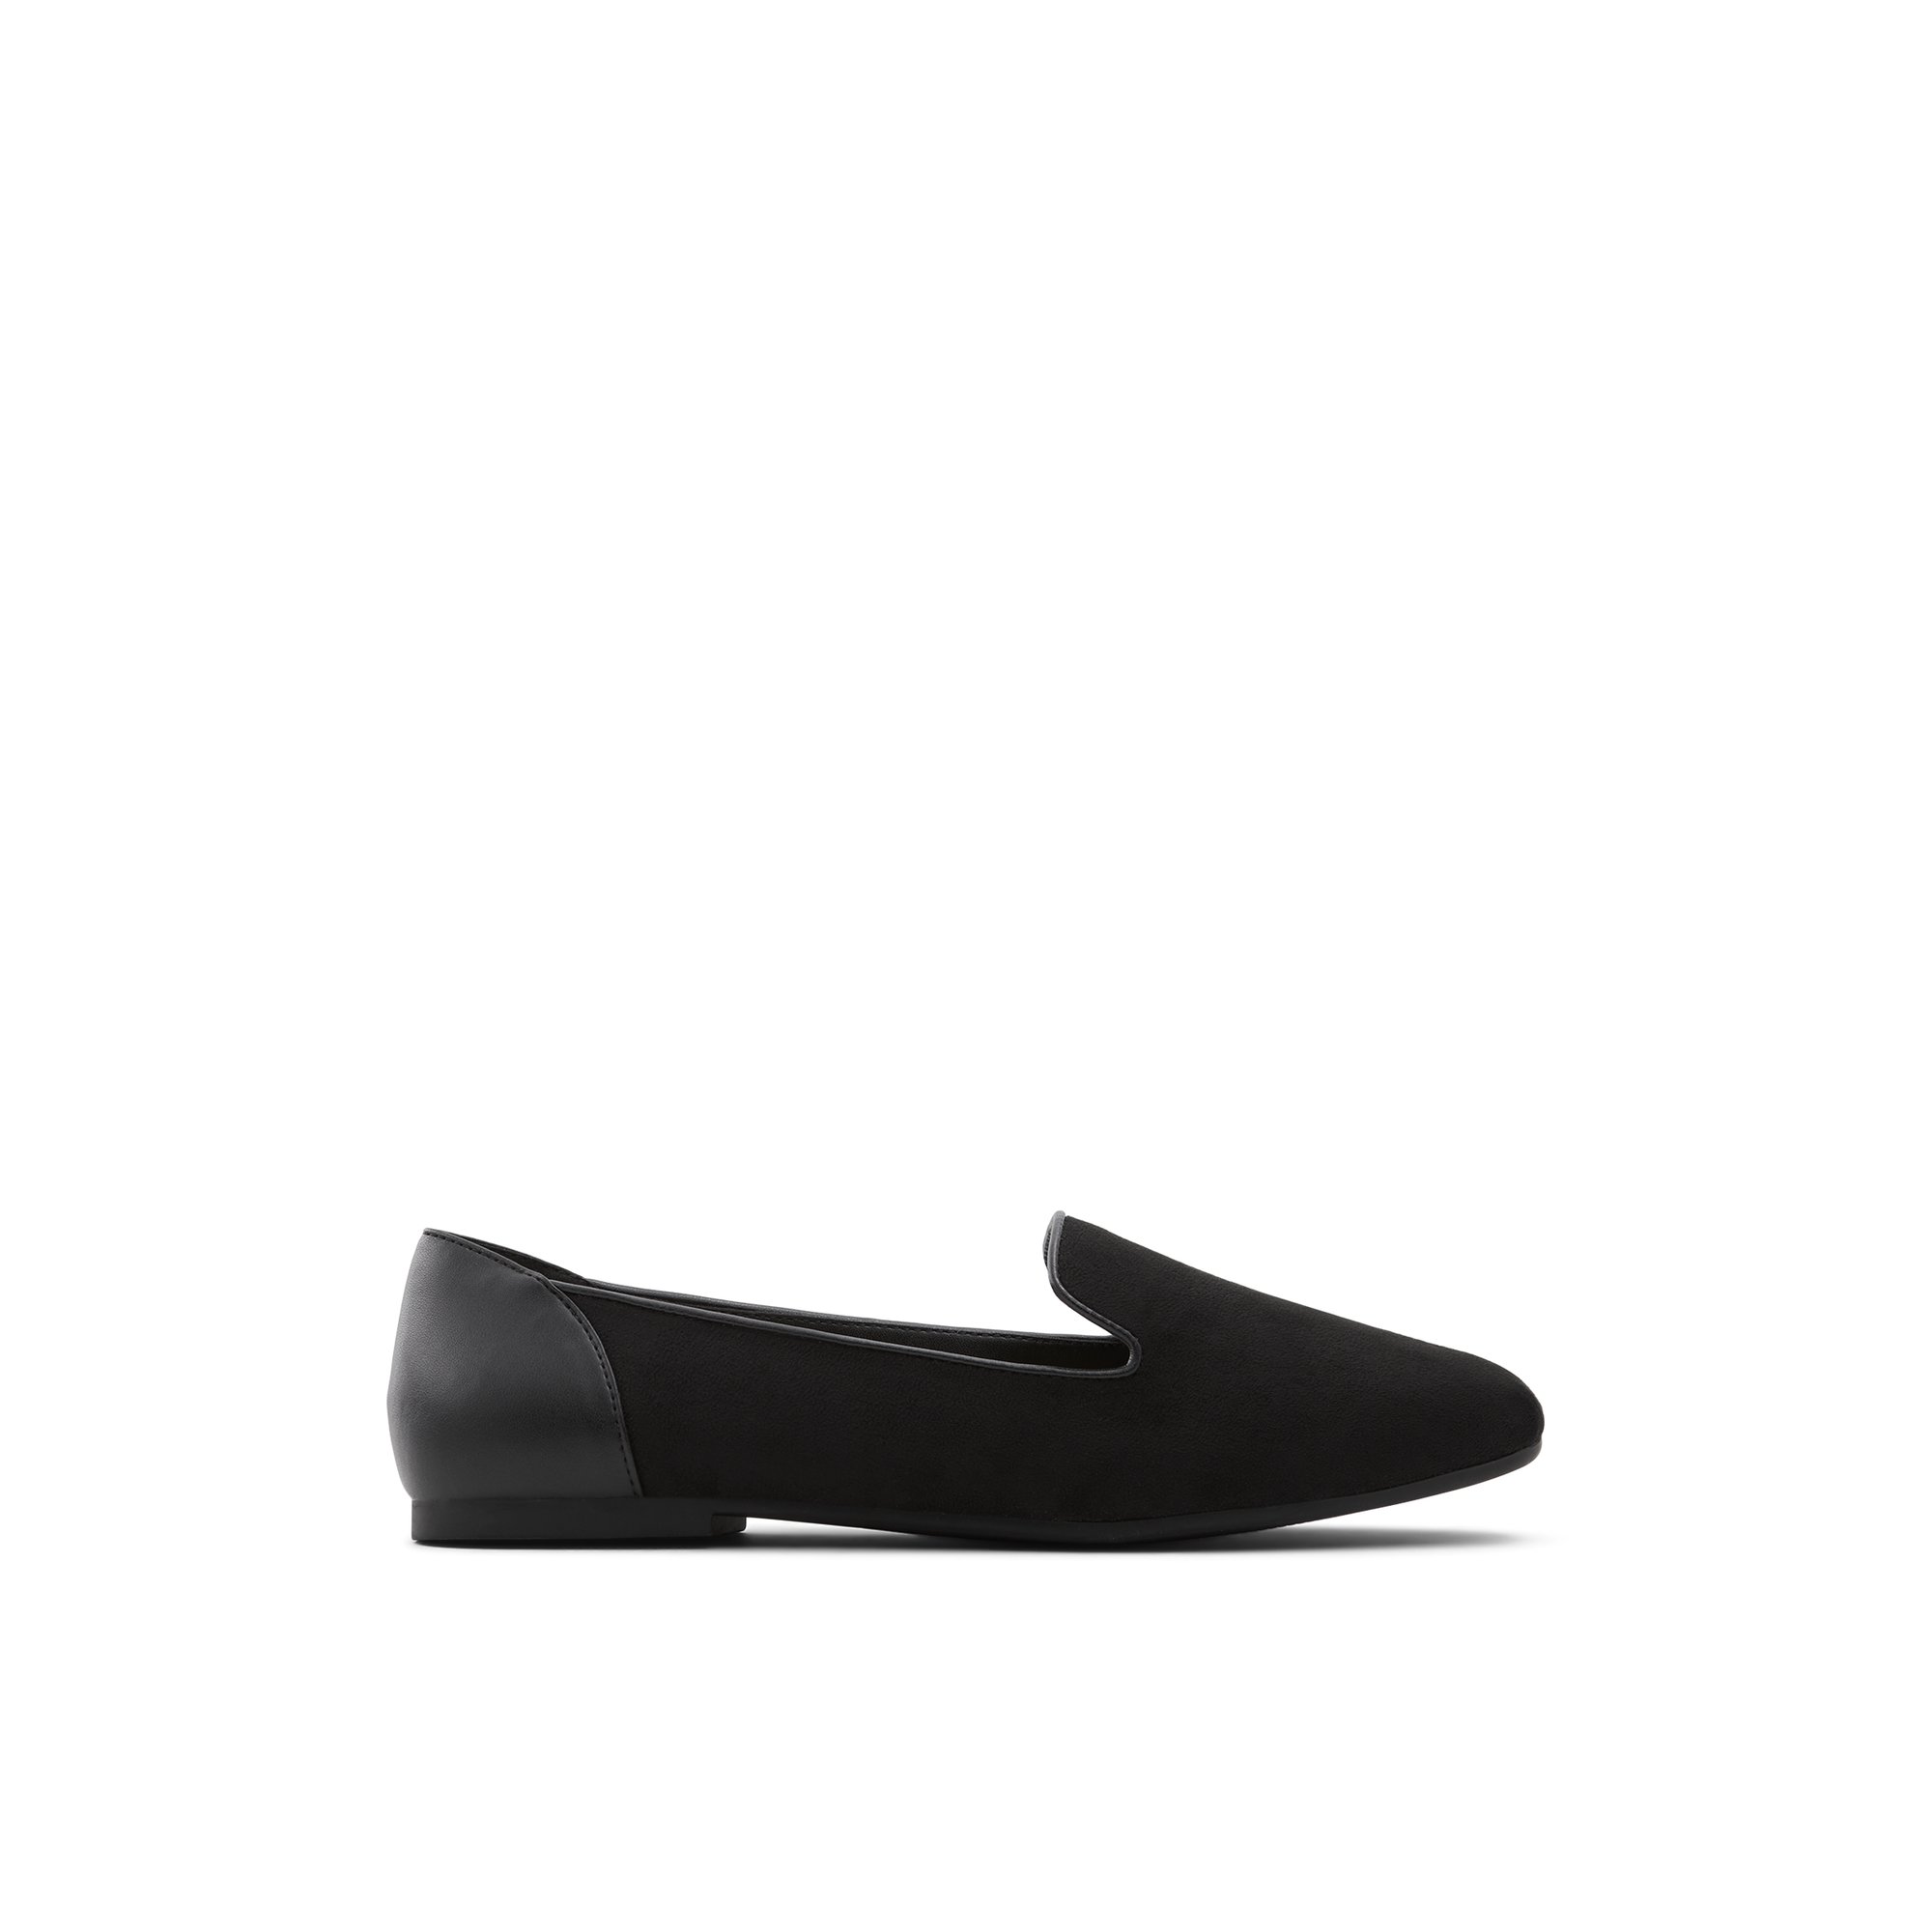 ALDO Mythimna - Women's Loafers - Black